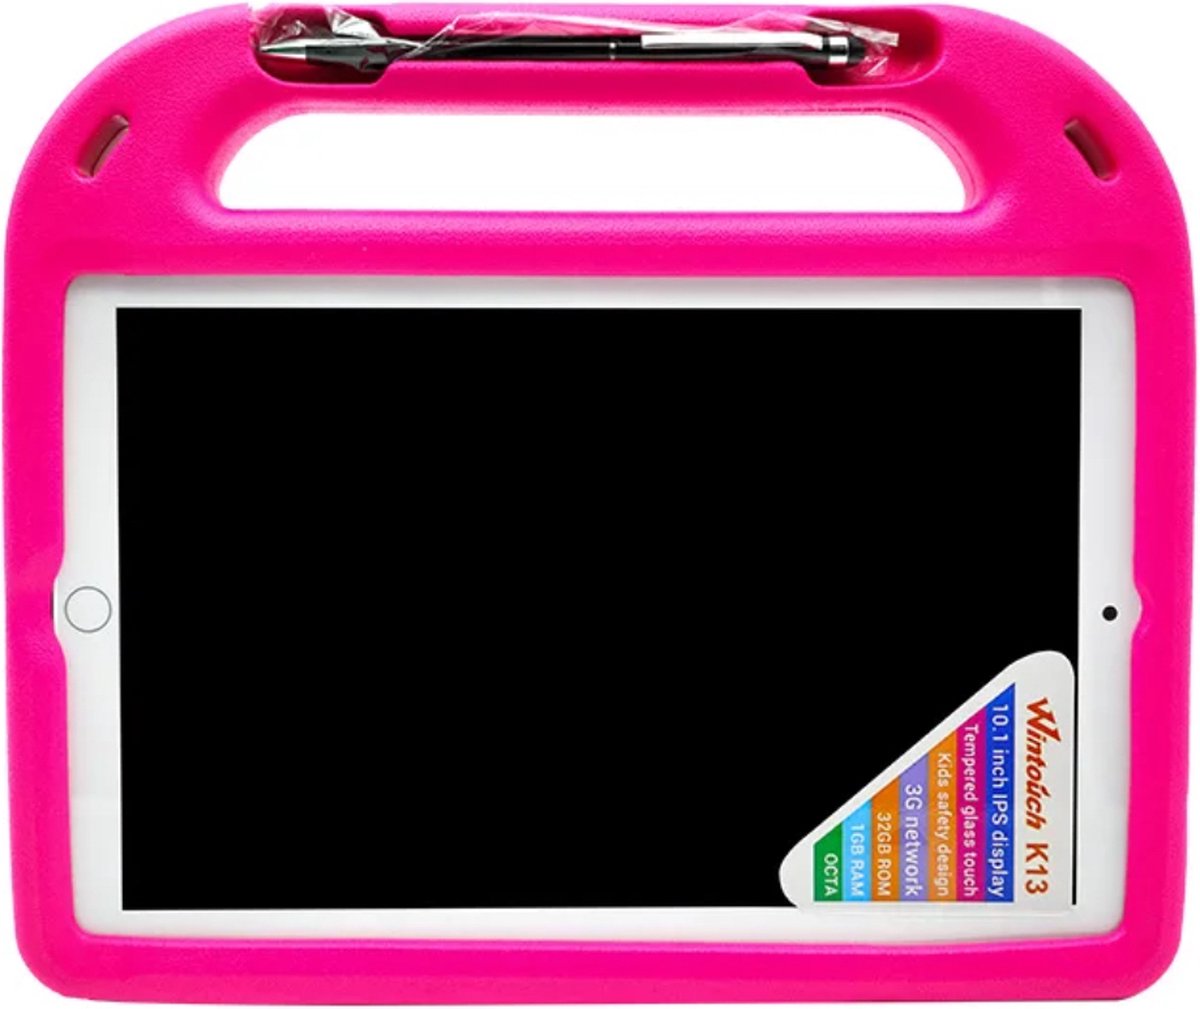 Kindertablet - Kindertablet vanaf 2 jaar - Tablet 10.1 inch - GRATIS SILICONEN HOESJE - PLASTIC BESCHERMFOLIE & HORLOGE MET EEN LEUKE KINDERBRIL! - 32 GB - leerzame tablet voor kinderen - Bluetooth - Wifi - spellen - camera - Roze